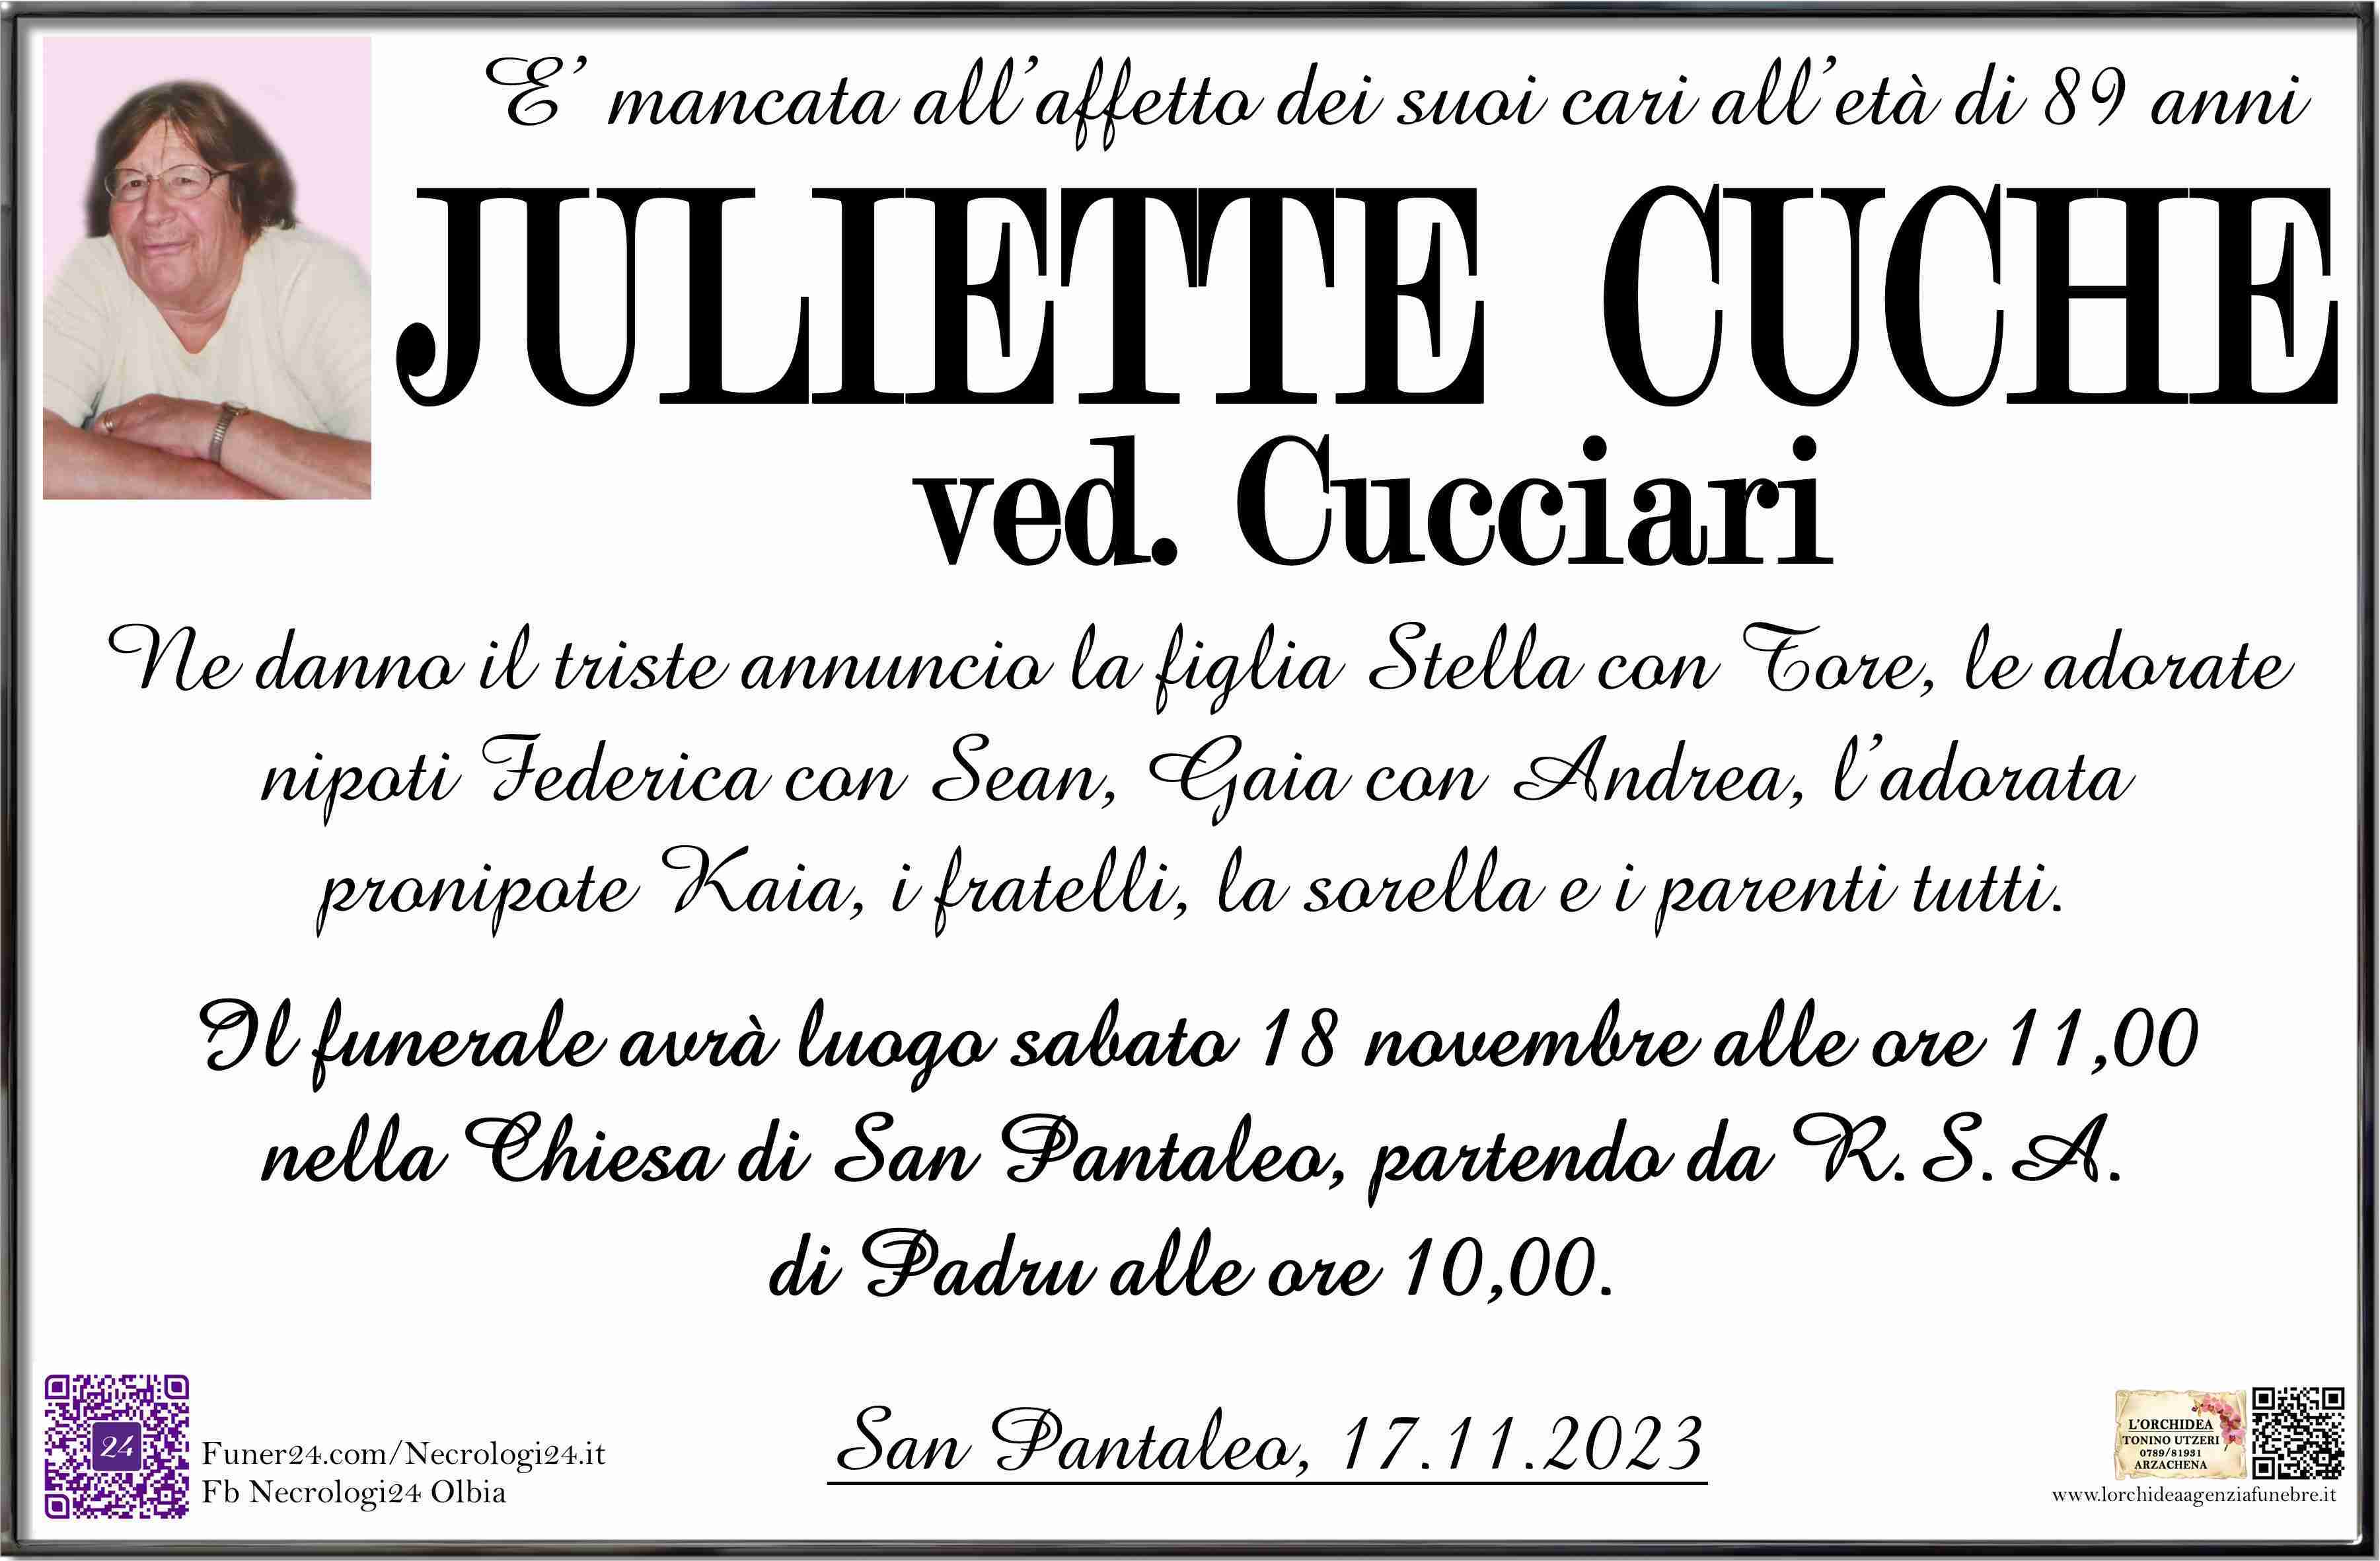 Juliette Cuche